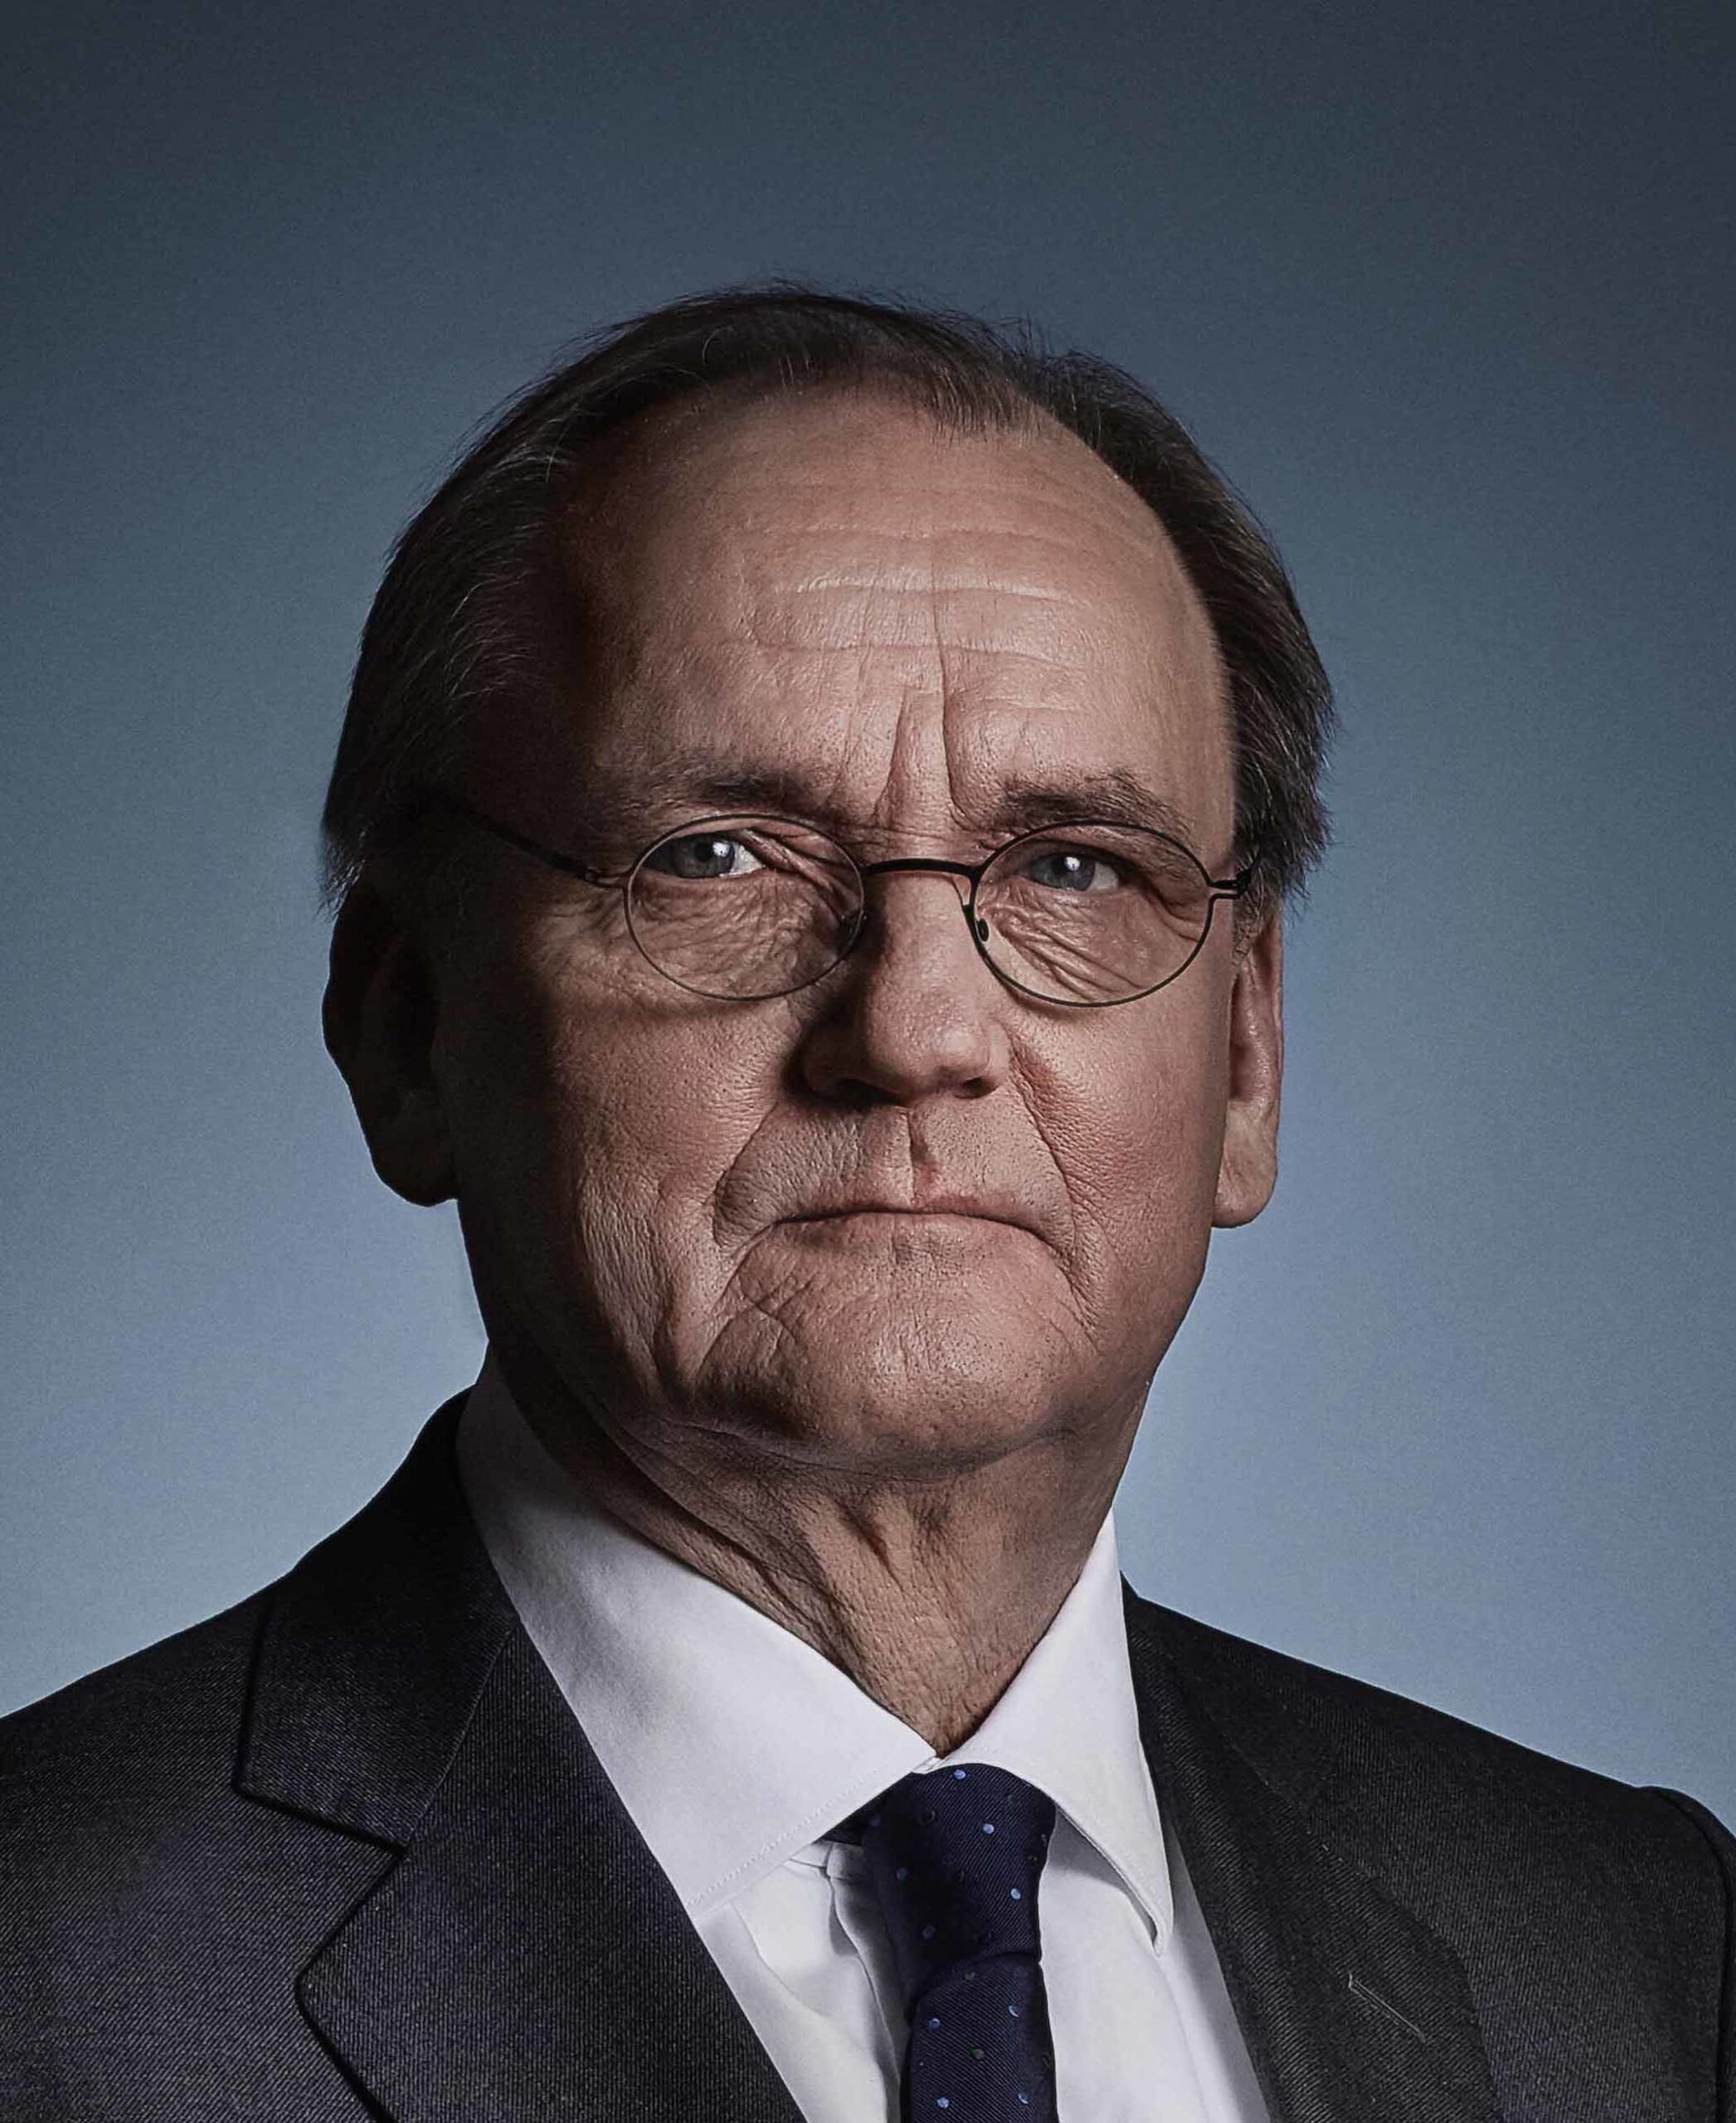 Doanh nhân Antti Herlin (sinh ngày 14/11/1956) giữ chức Chủ tịch Tập đoàn KONE. Ông được coi là người giàu nhất Phần Lan với tổng tài sản ròng trị giá 7 tỷ USD - theo báo cáo của Tạp chí Forbes năm 2021. (Ảnh: united-europe)